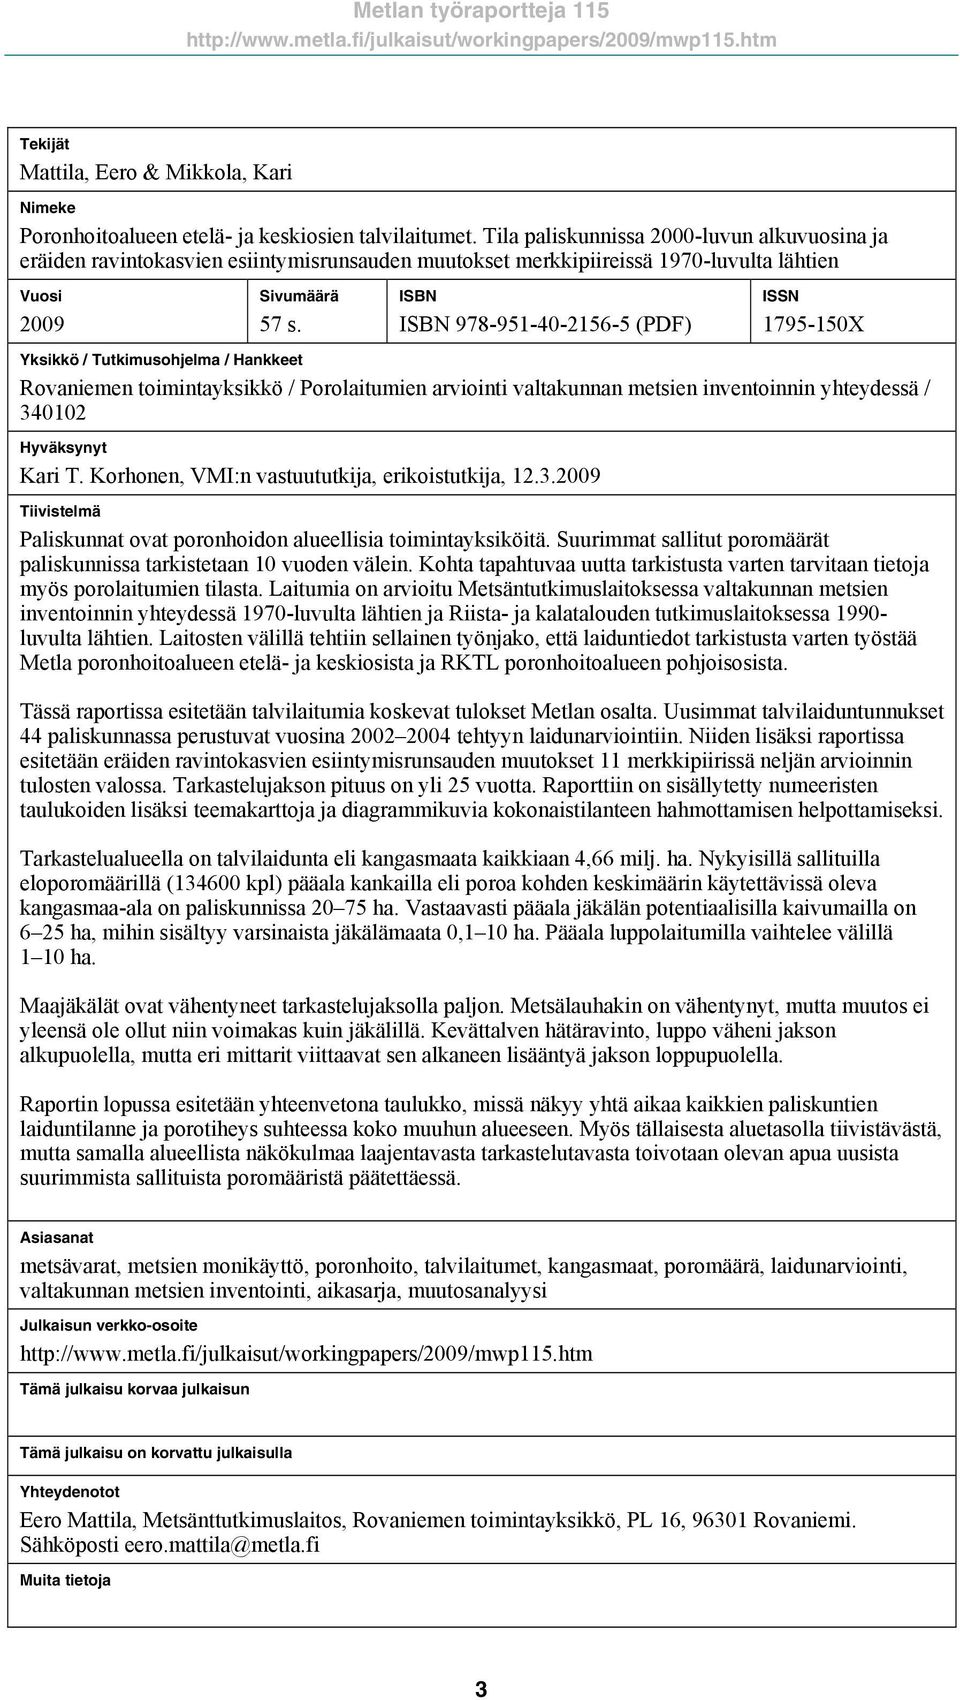 ISBN ISBN 978-951-40-2156-5 (PDF) ISSN 1795-150X Yksikkö / Tutkimusohjelma / Hankkeet Rovaniemen toimintayksikkö / Porolaitumien arviointi valtakunnan metsien inventoinnin yhteydessä / 340102